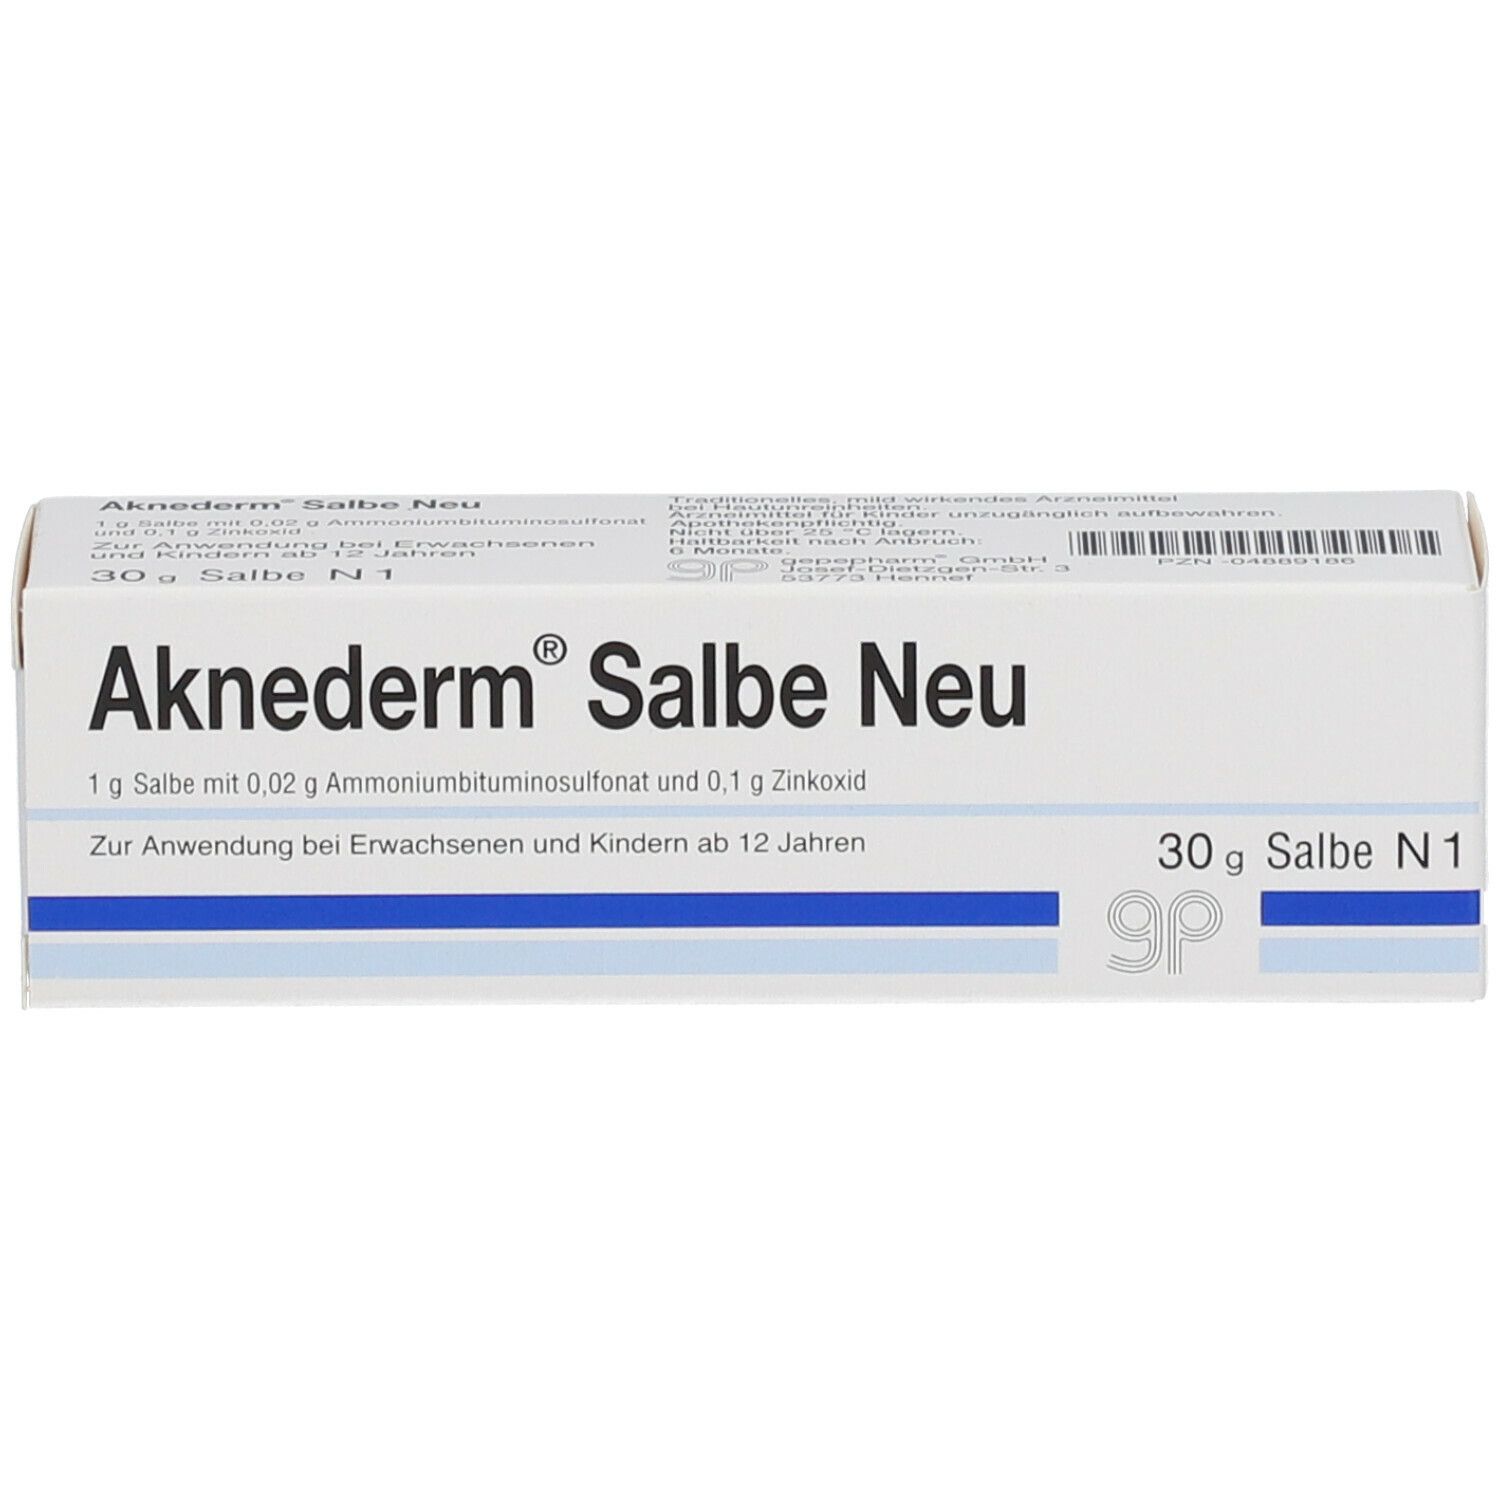 Aknederm® Salbe Neu